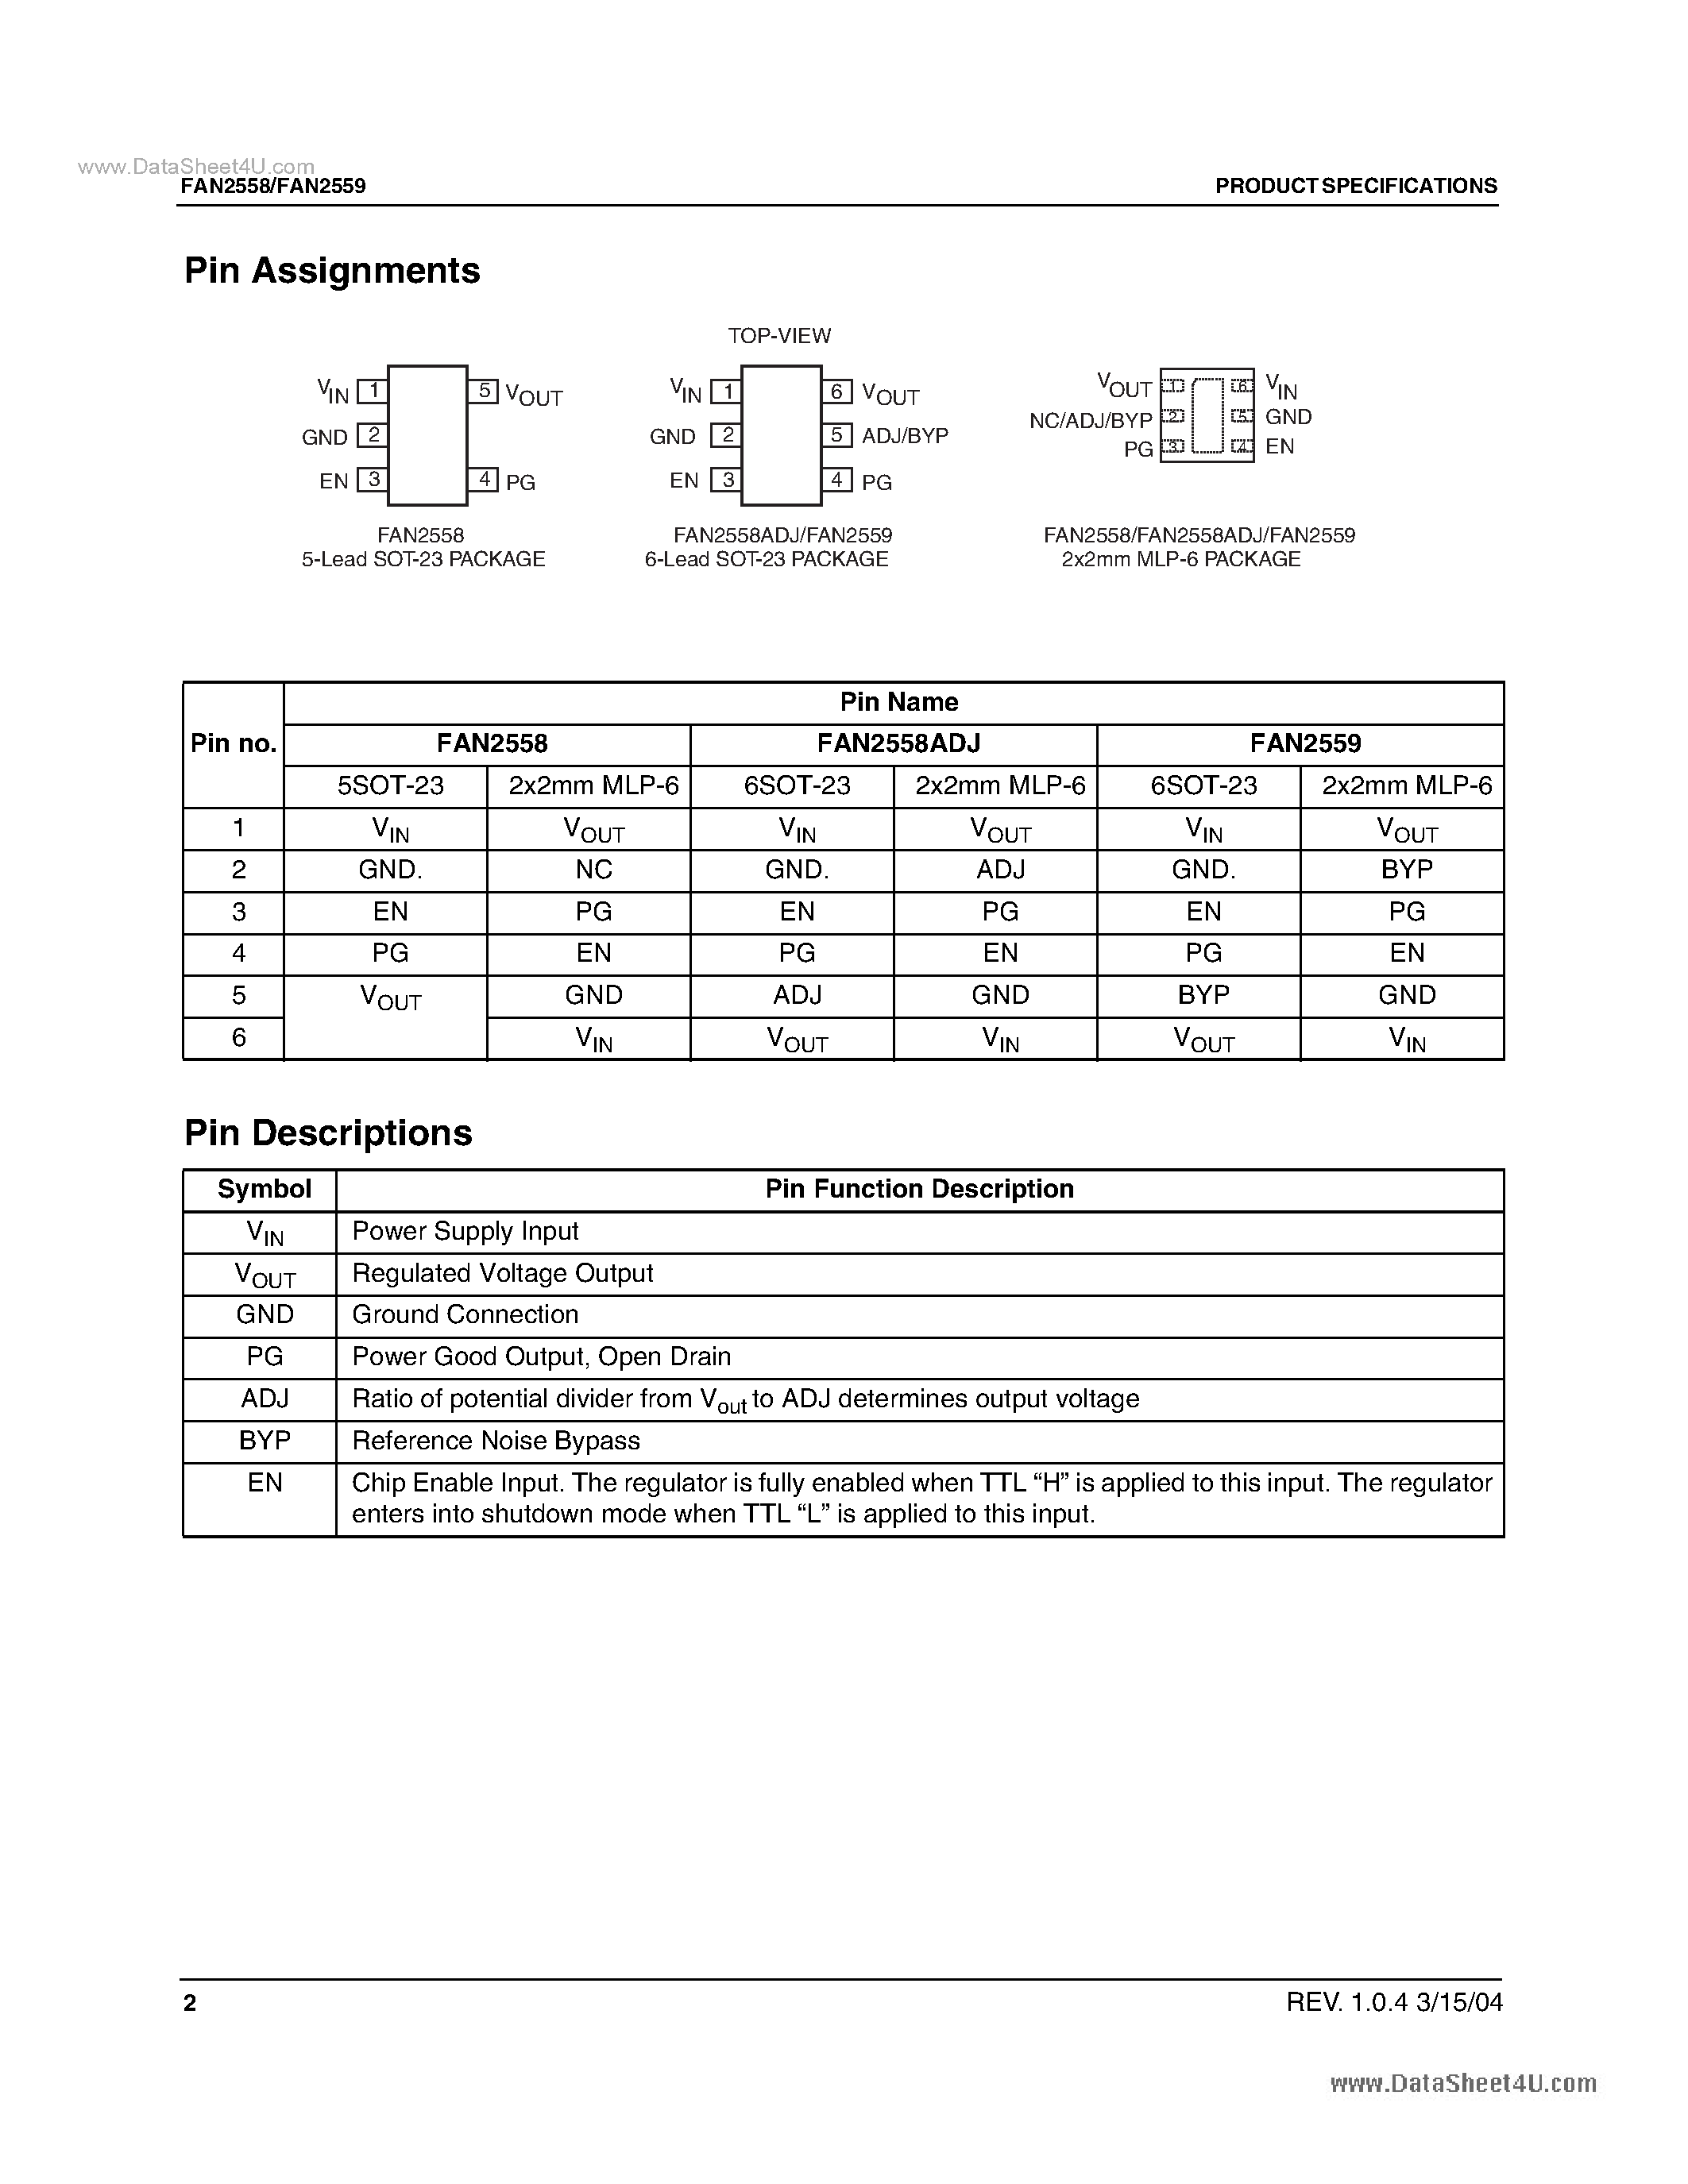 Даташит FAN2558 - (FAN2558 / FAN2559) 180mA Low Voltage CMOS LDO страница 2